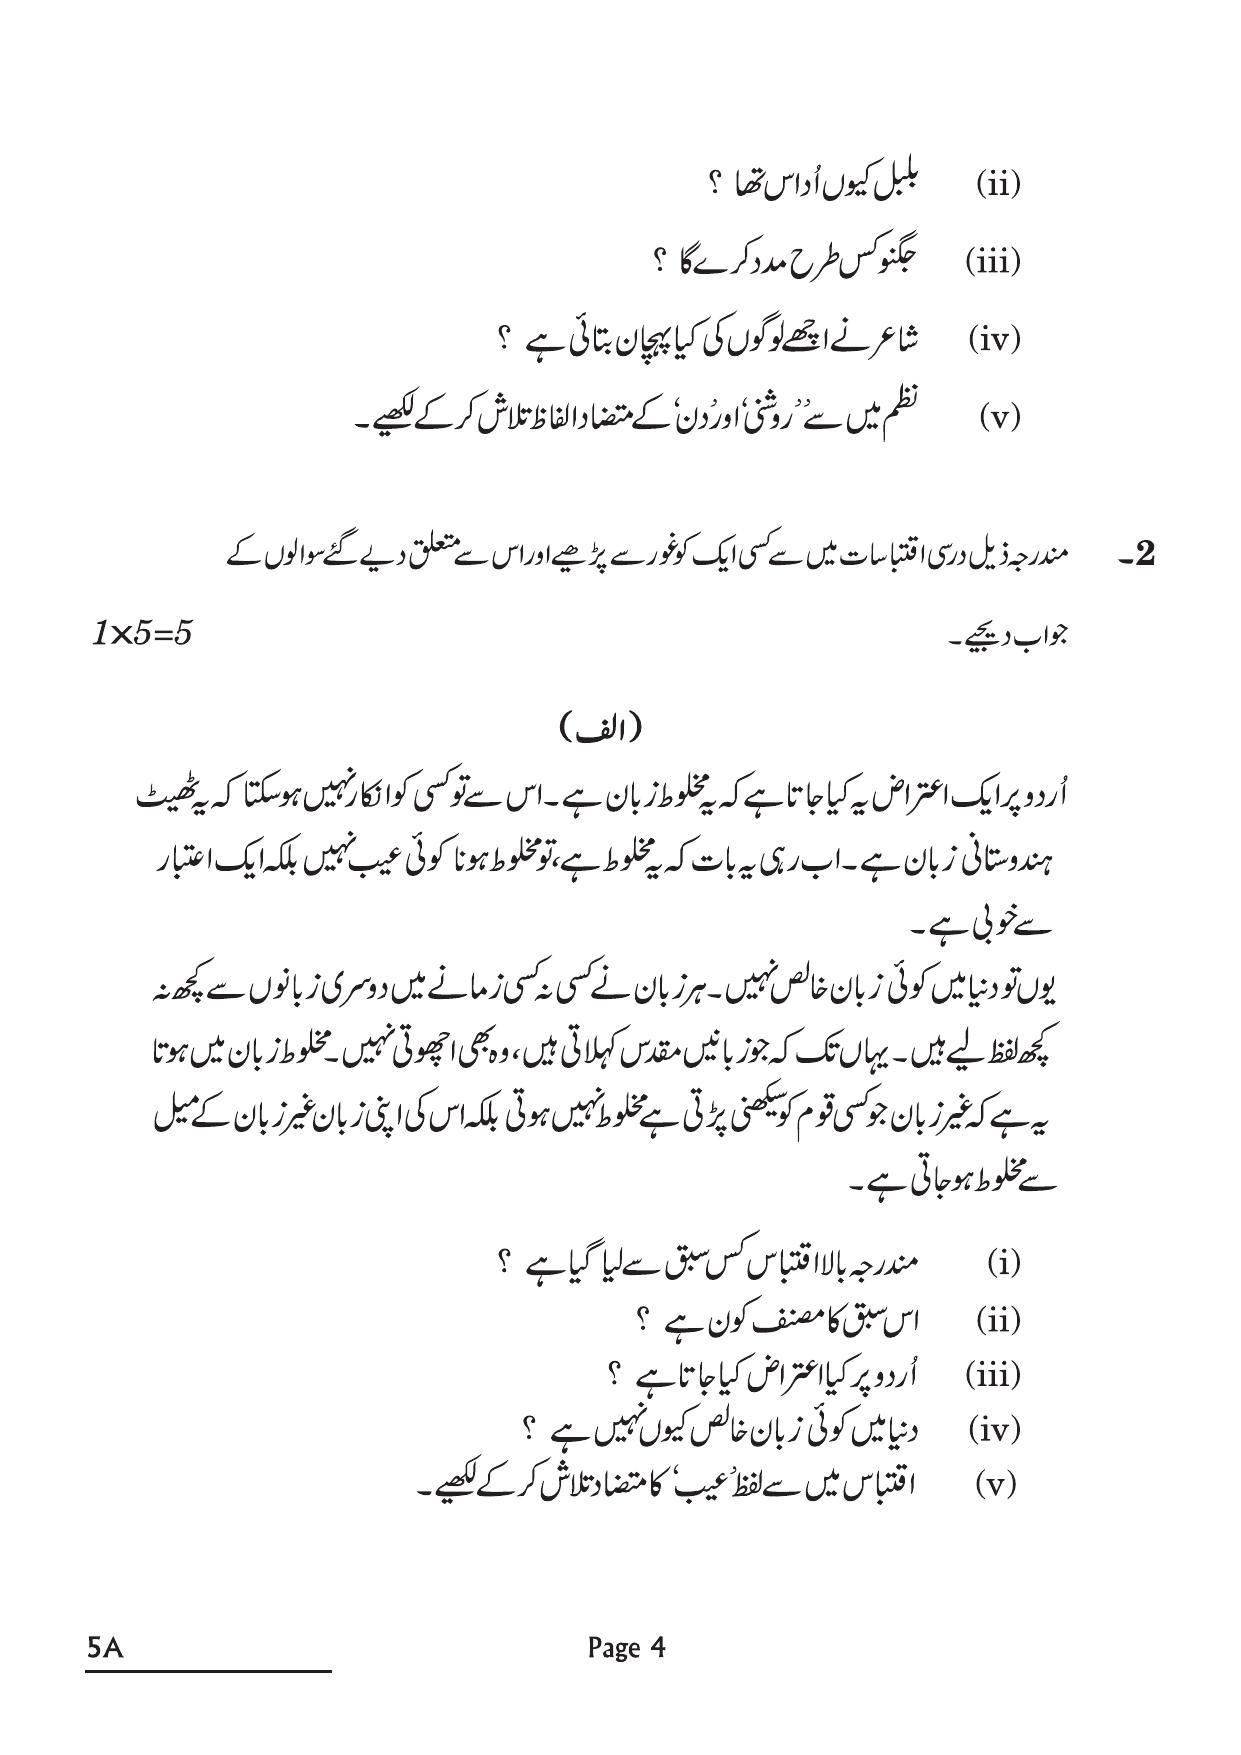 CBSE Class 10 5A Urdu A 2022 Question Paper - Page 4